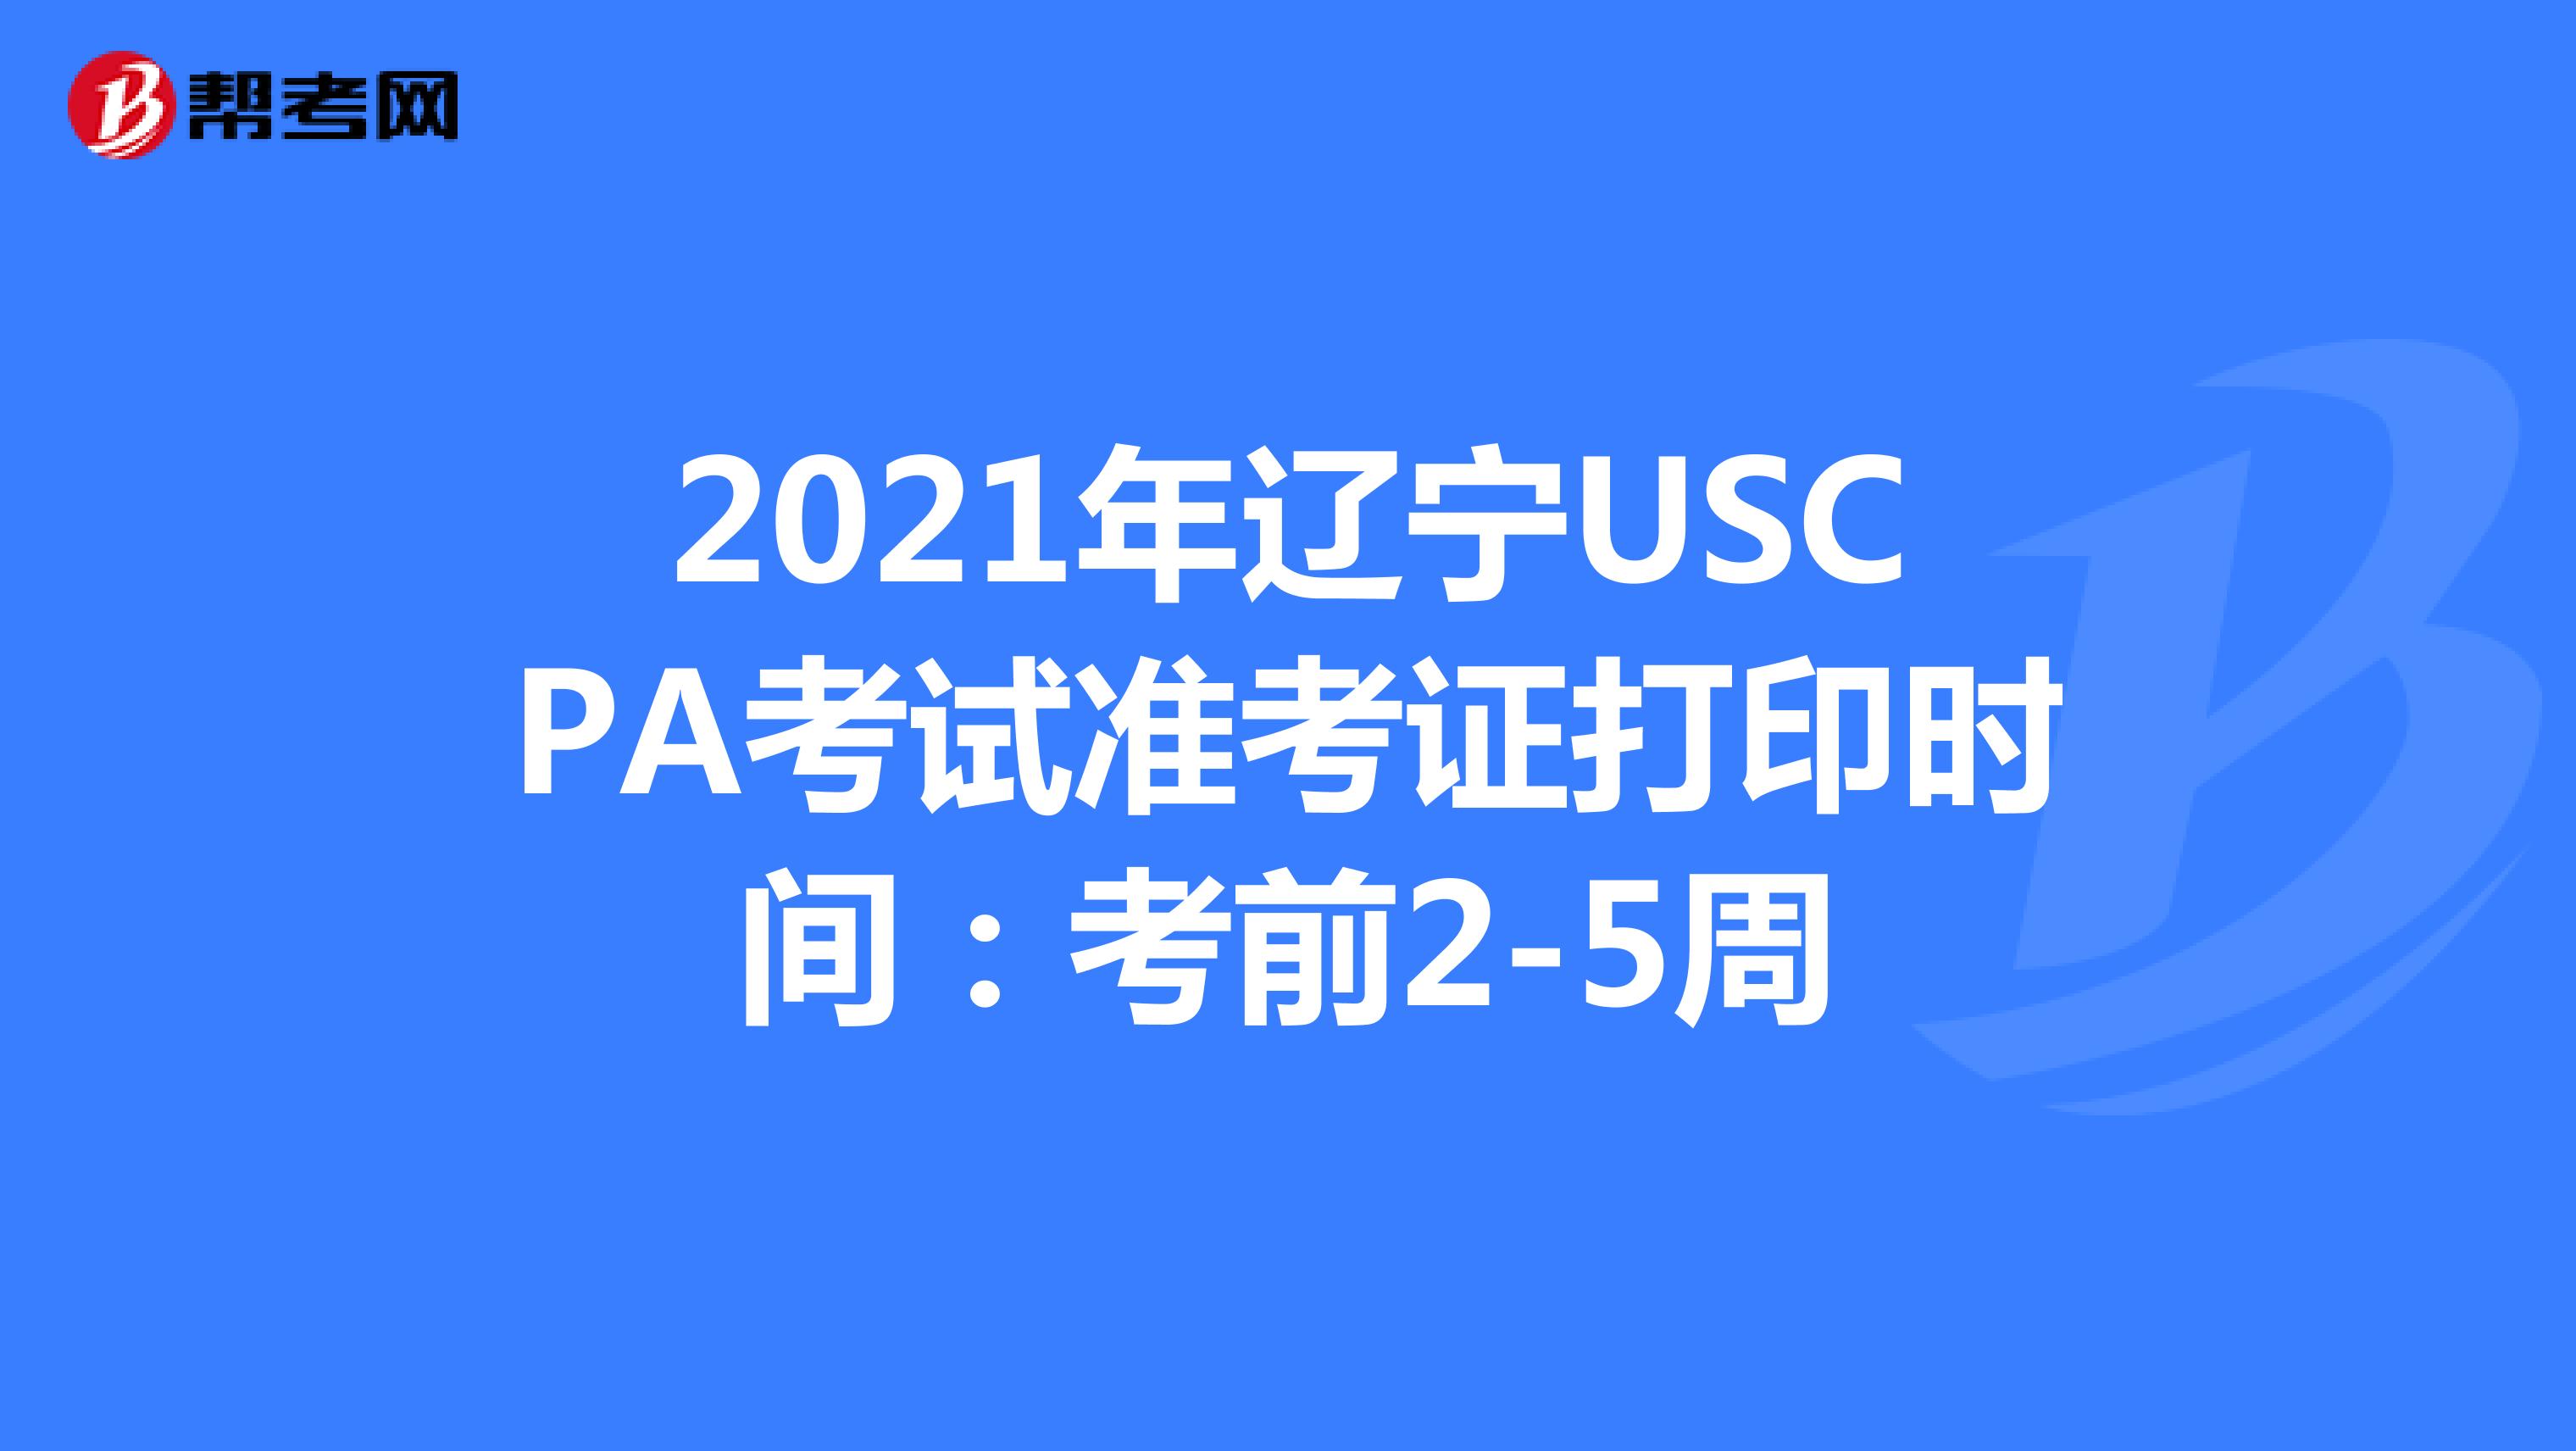 2021年辽宁USCPA考试准考证打印时间：考前2-5周